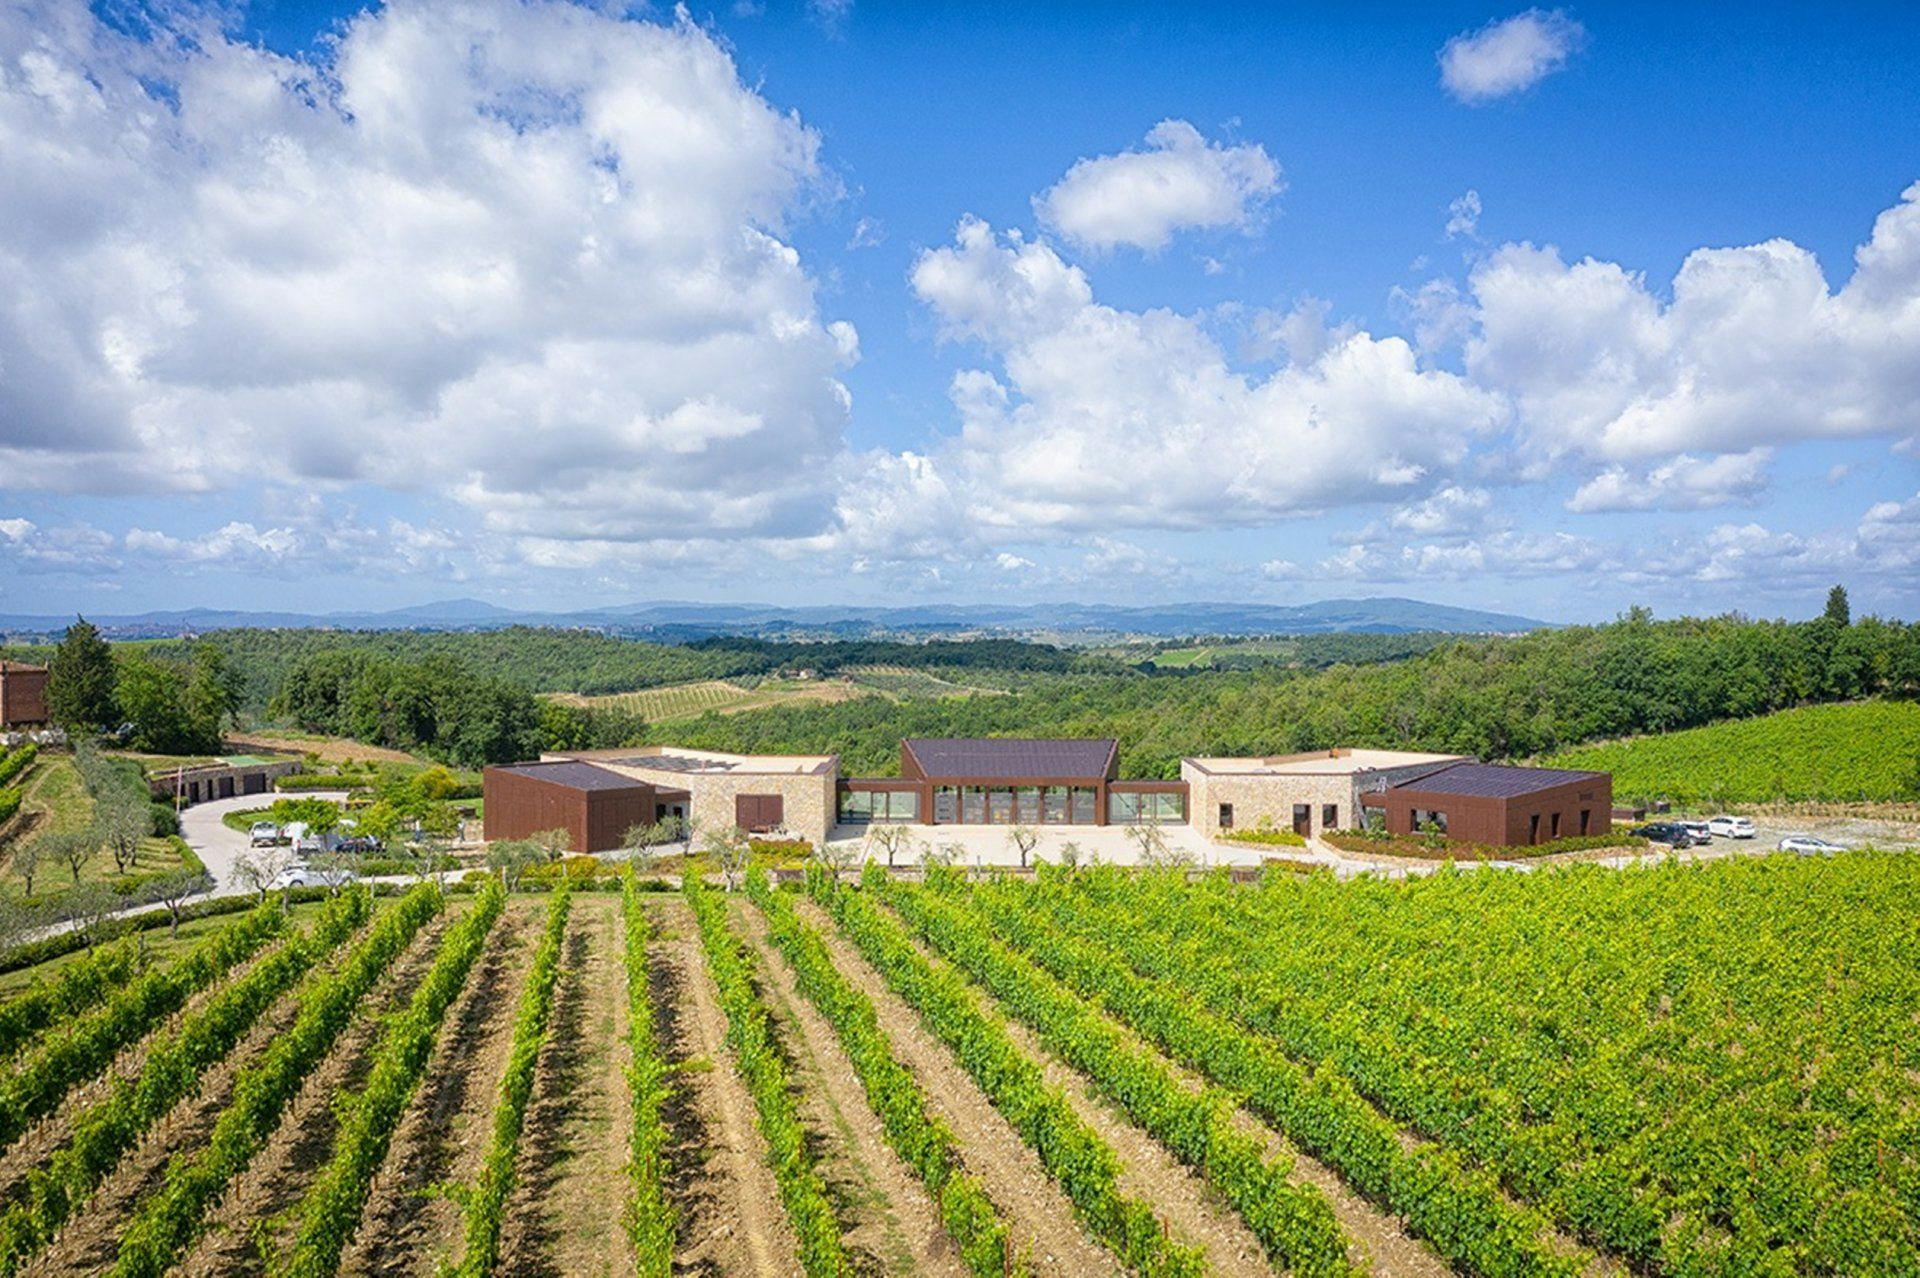 Vallepicciola winery chianti